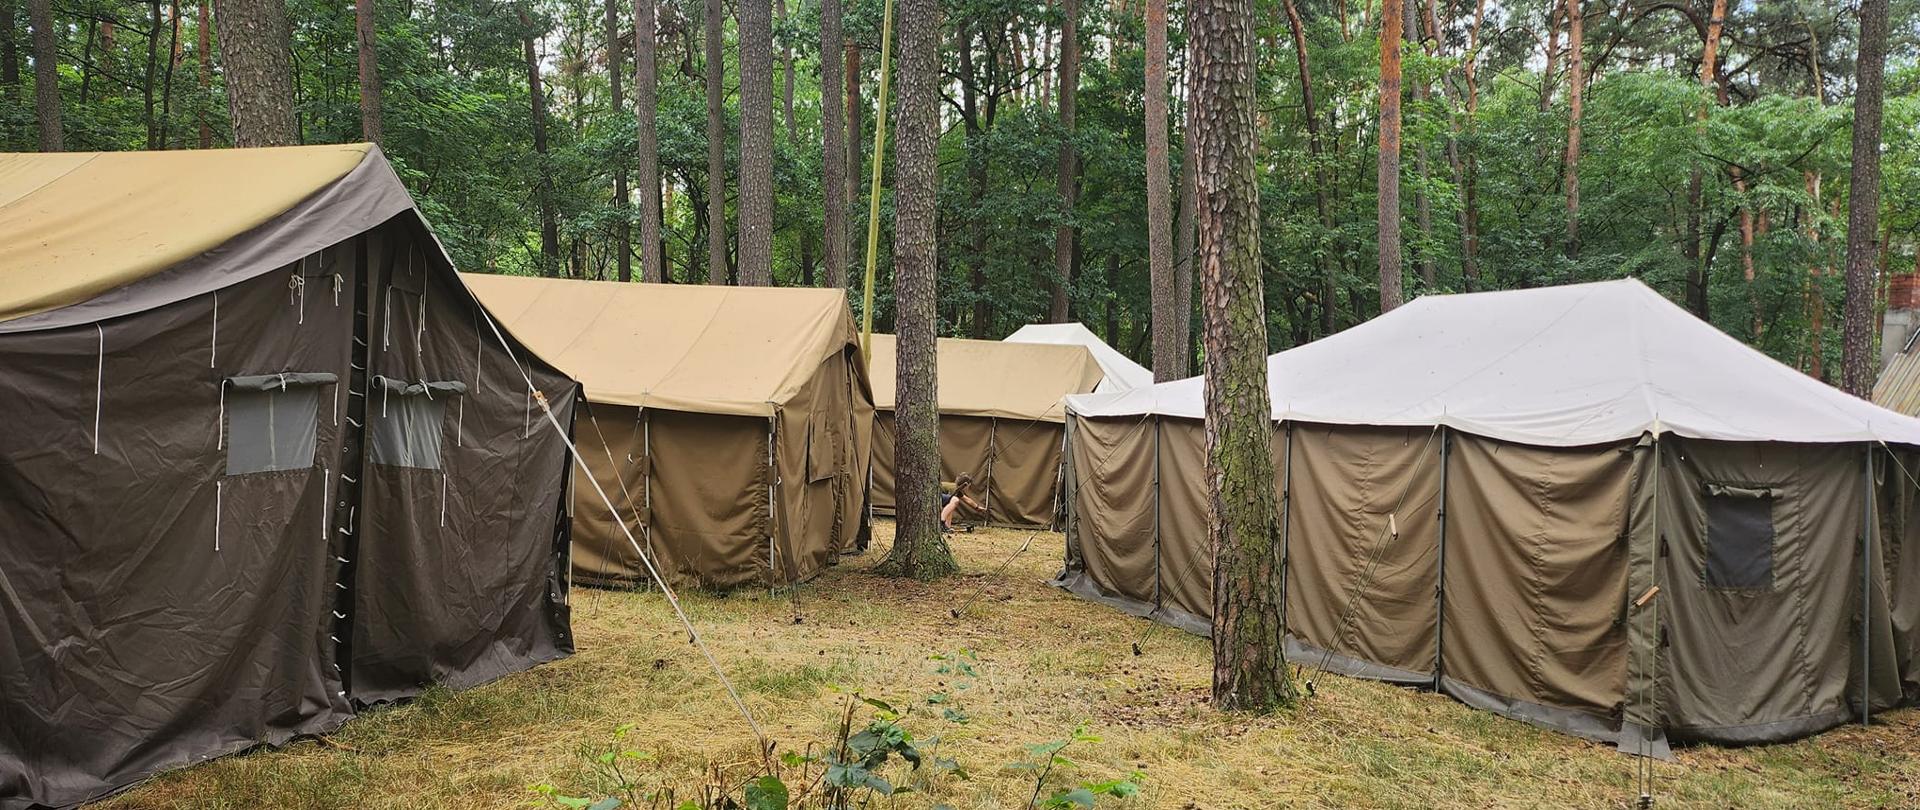 W lesie pomiędzy drzewami stoją cztery duże brązowe namioty